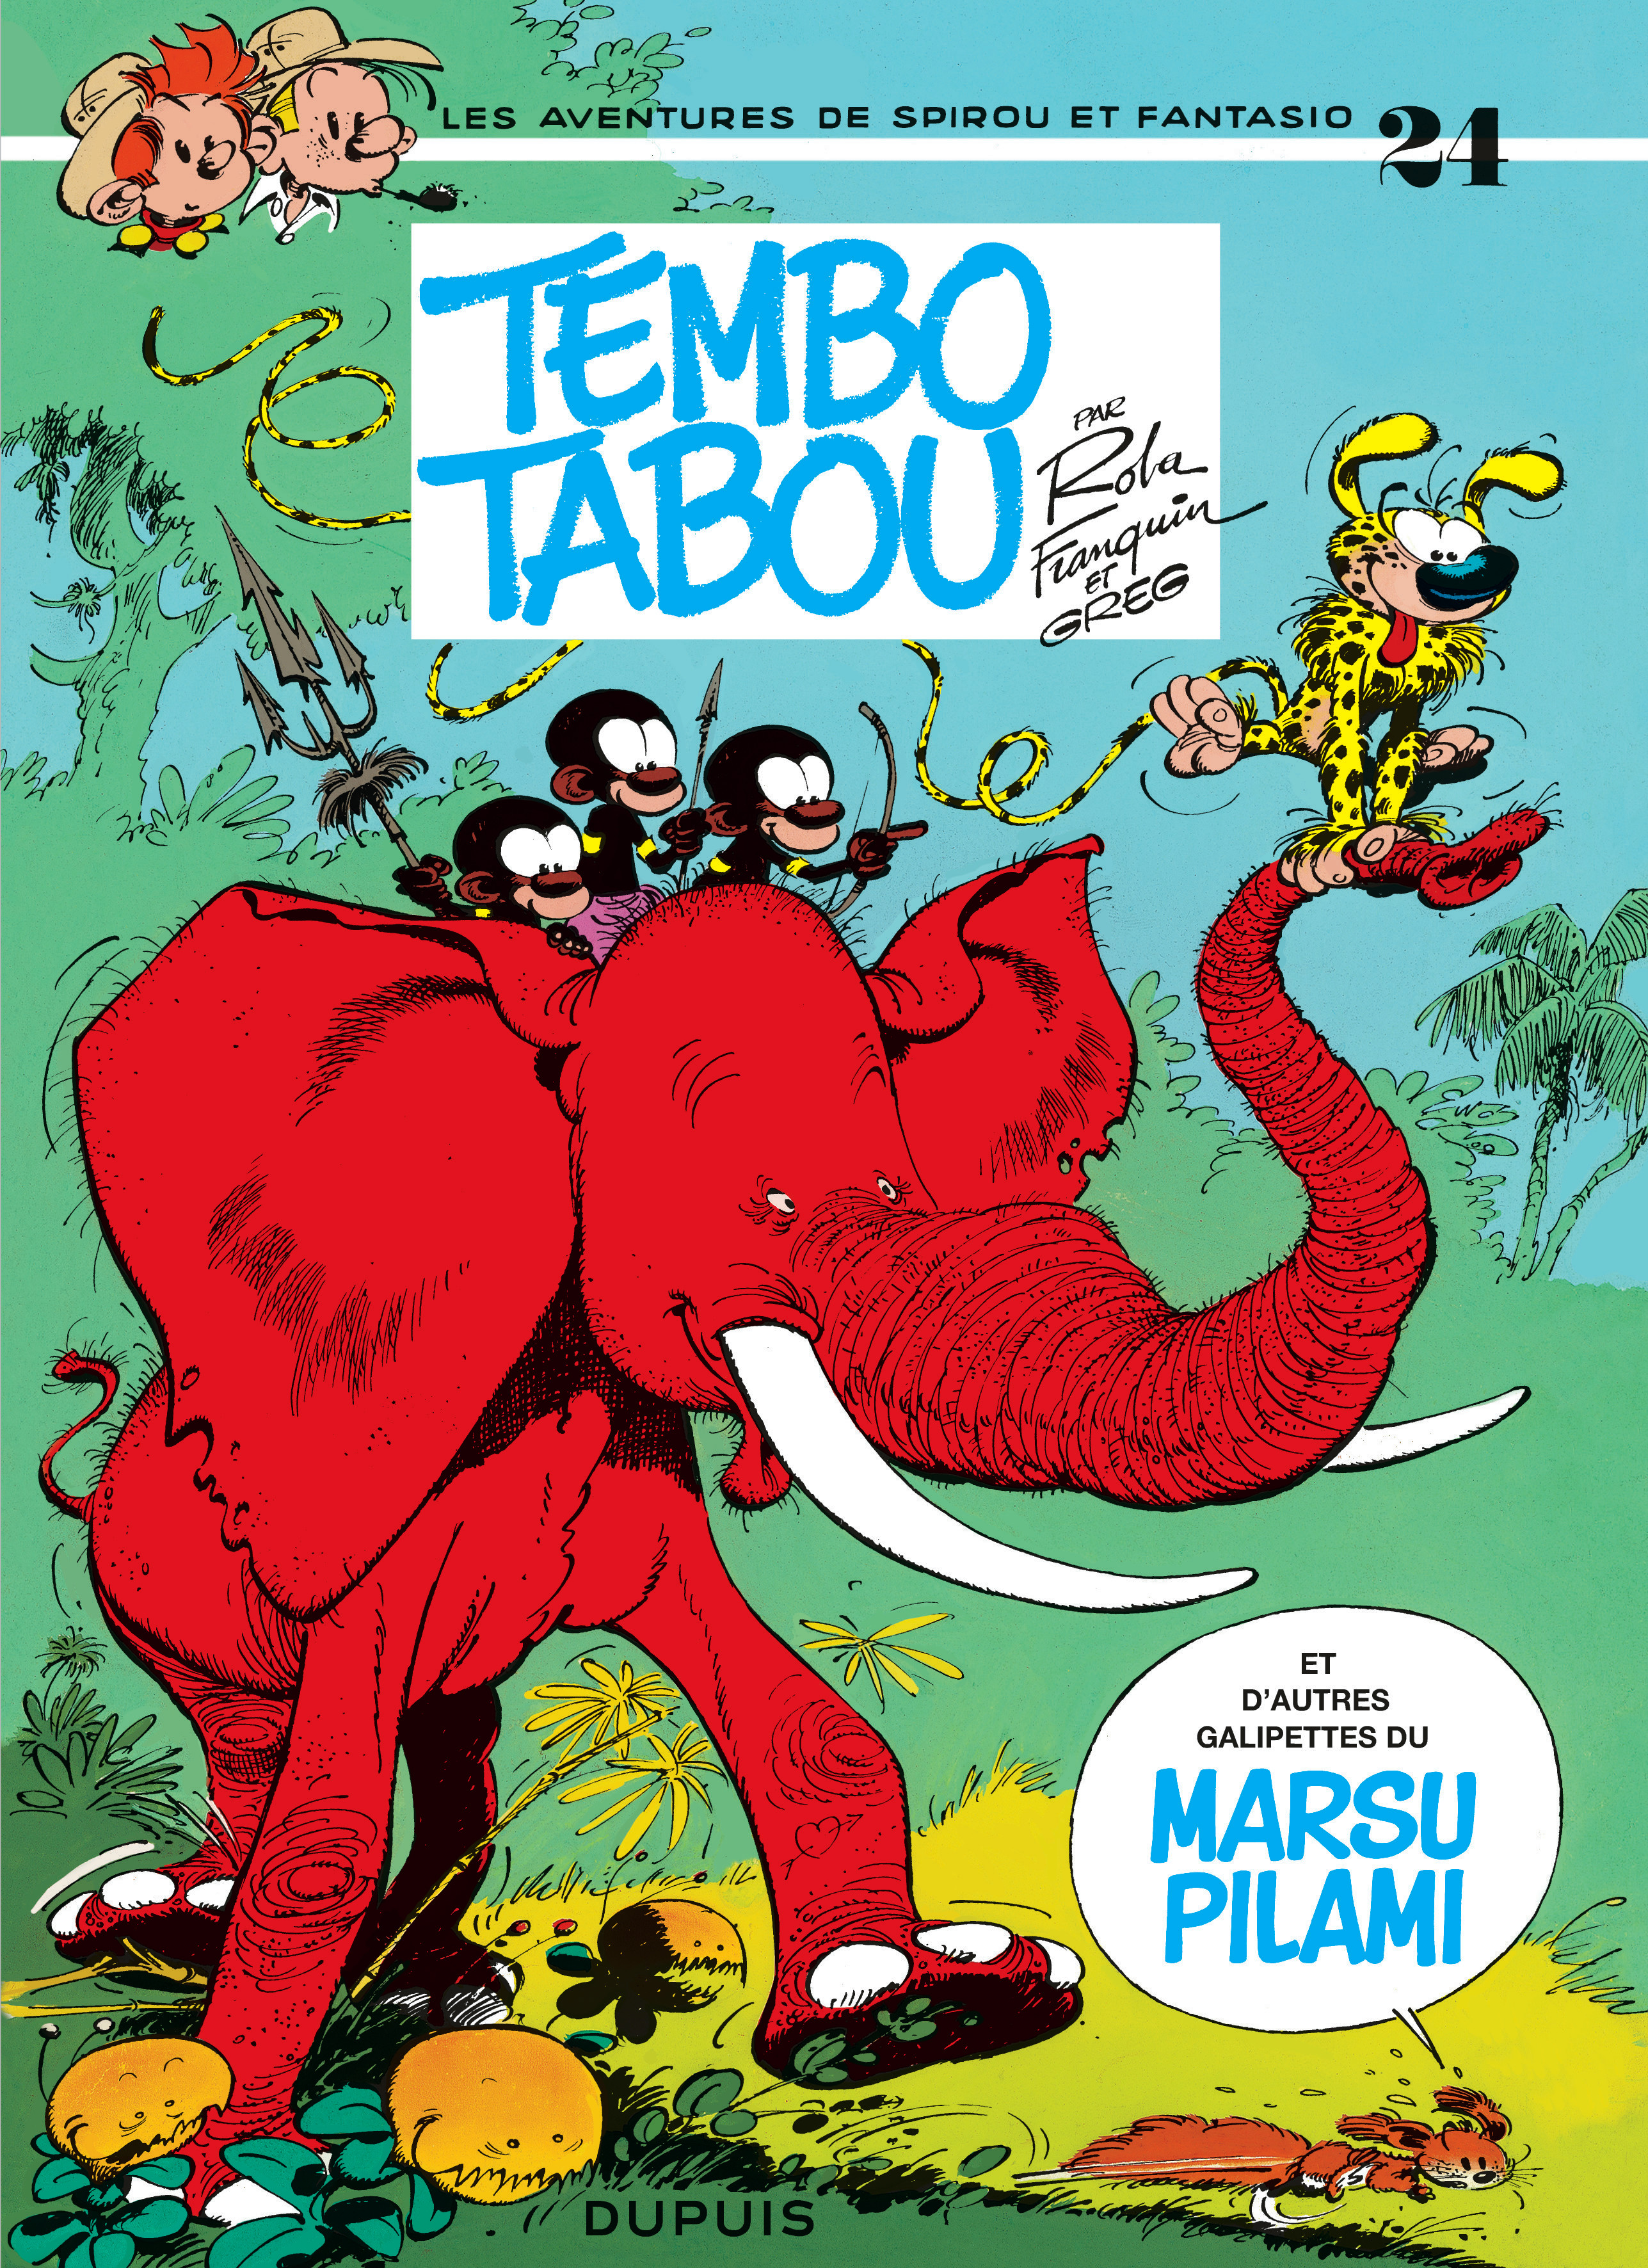 Spirou et Fantasio – Tome 24 – Tembo Tabou - couv